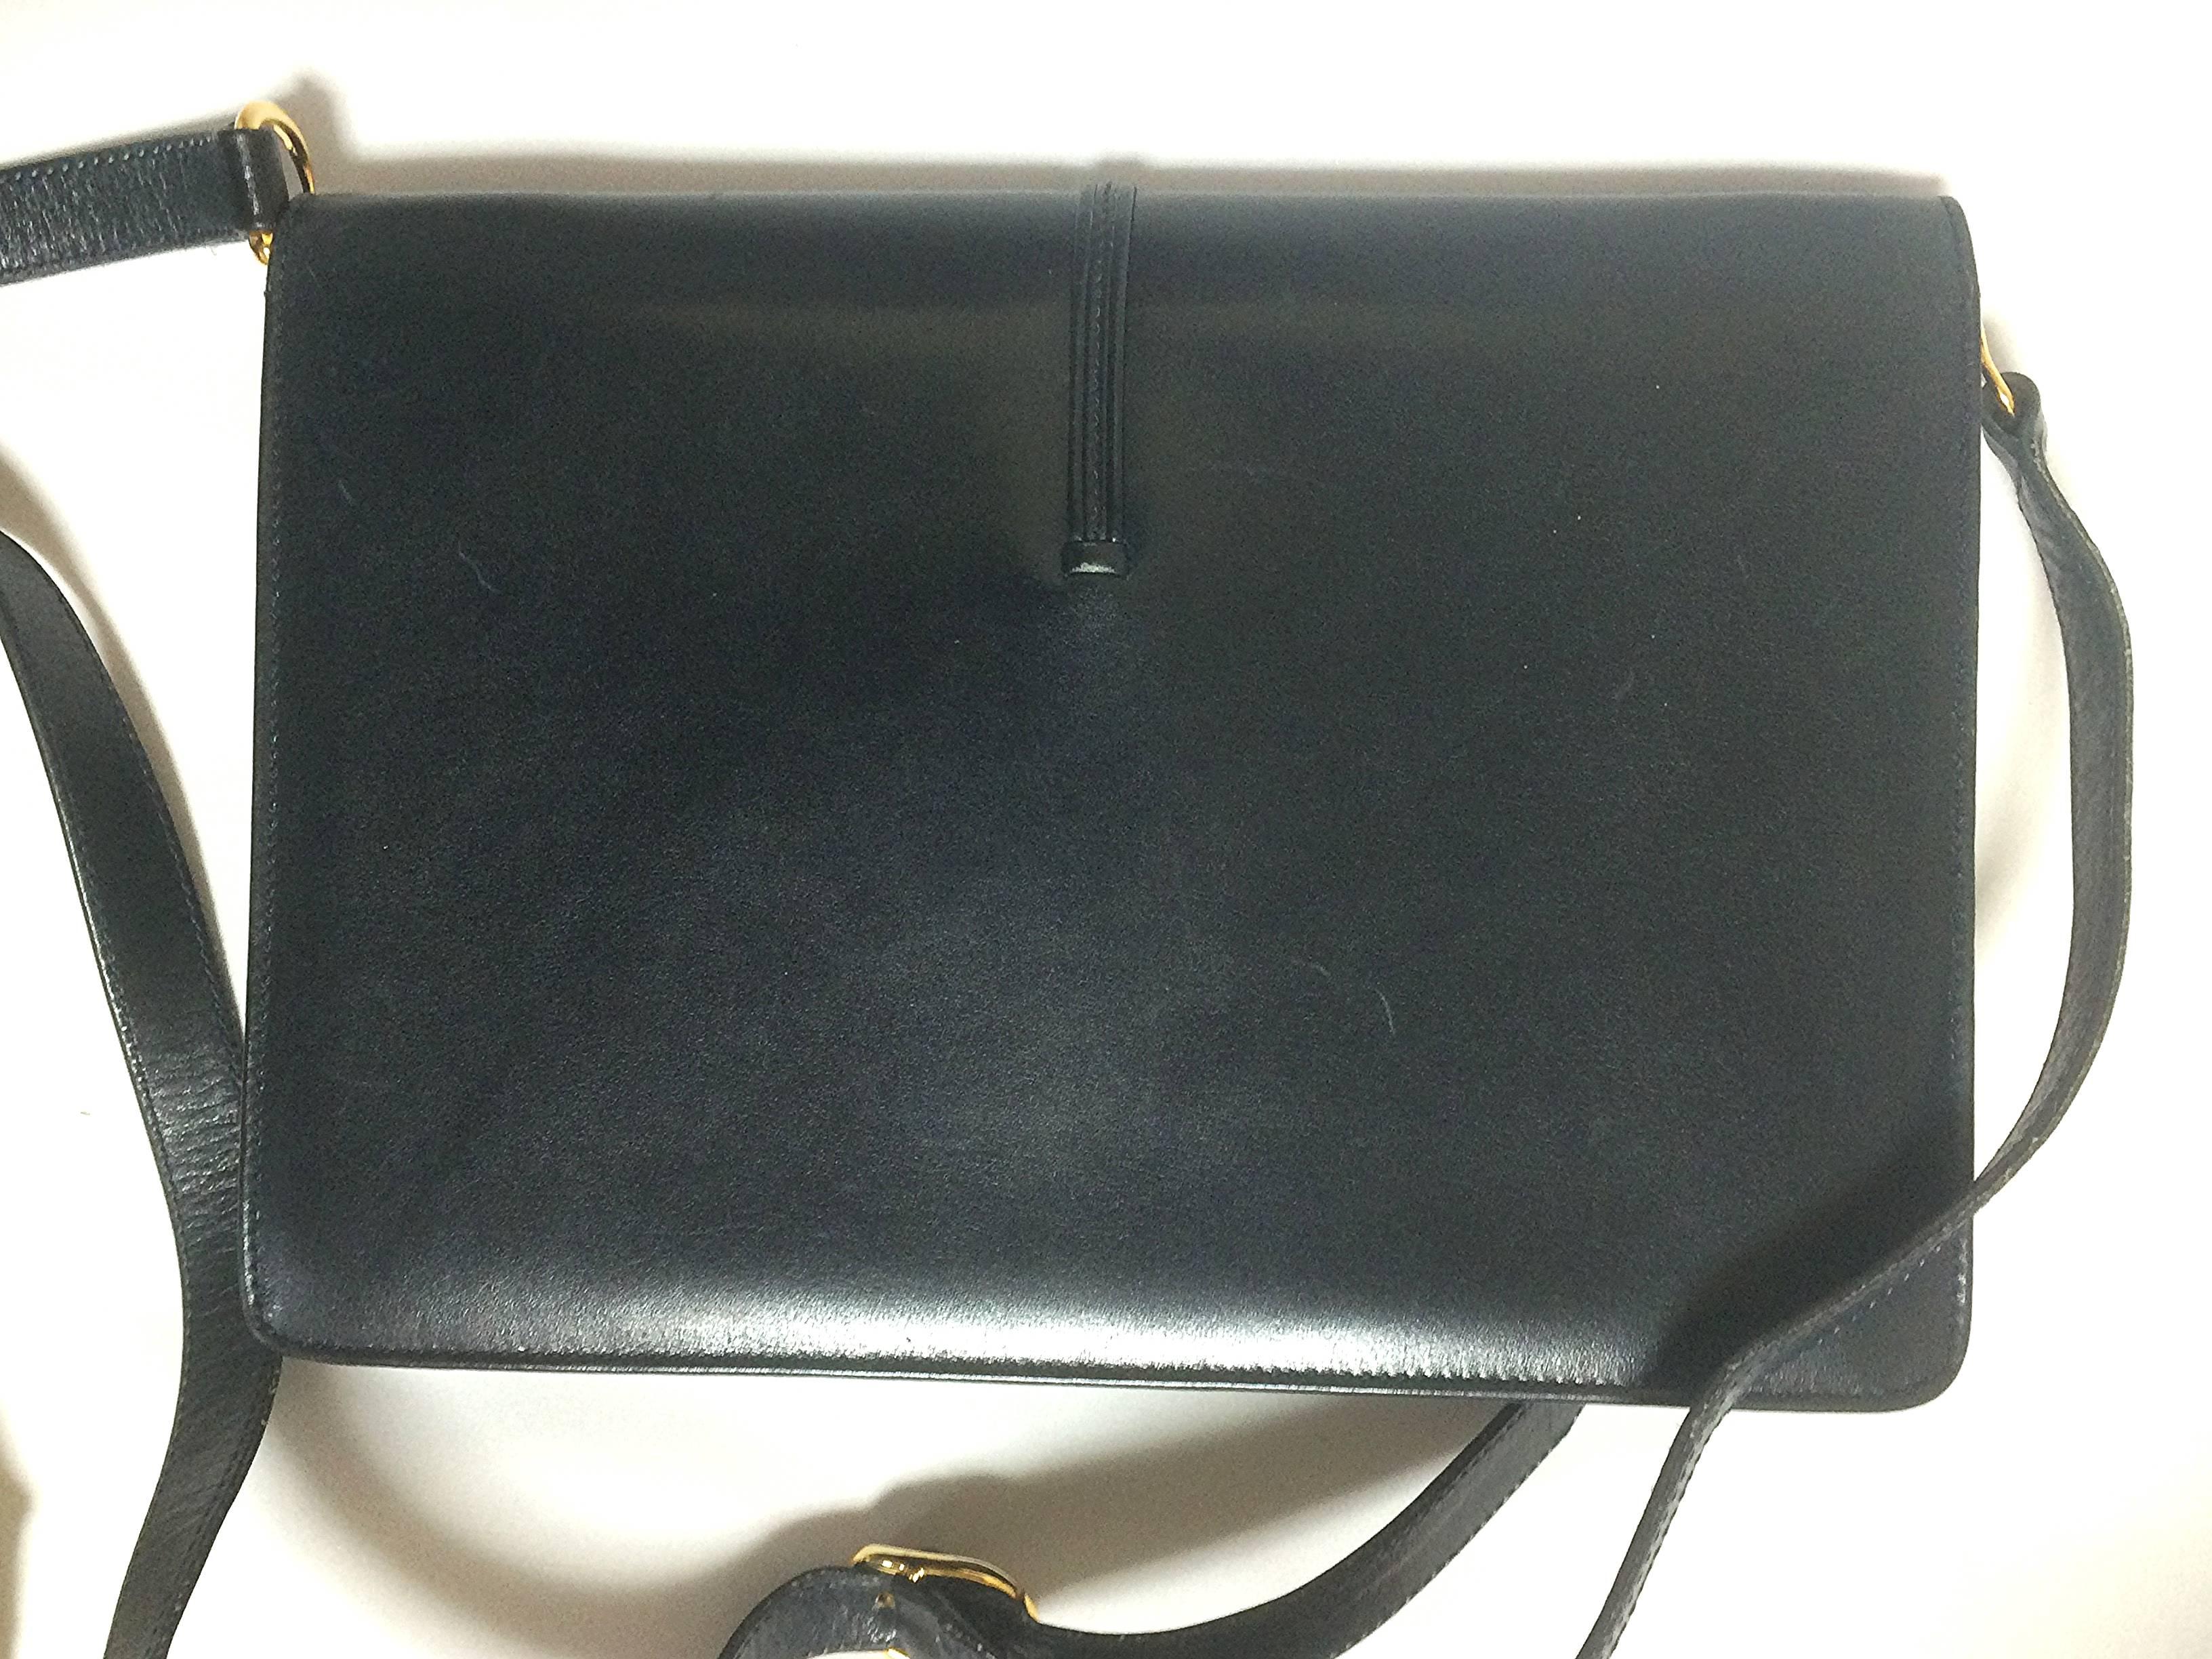 Black 80’s Vintage Gucci navy leather  shoulder bag with golden horsebit motif closure